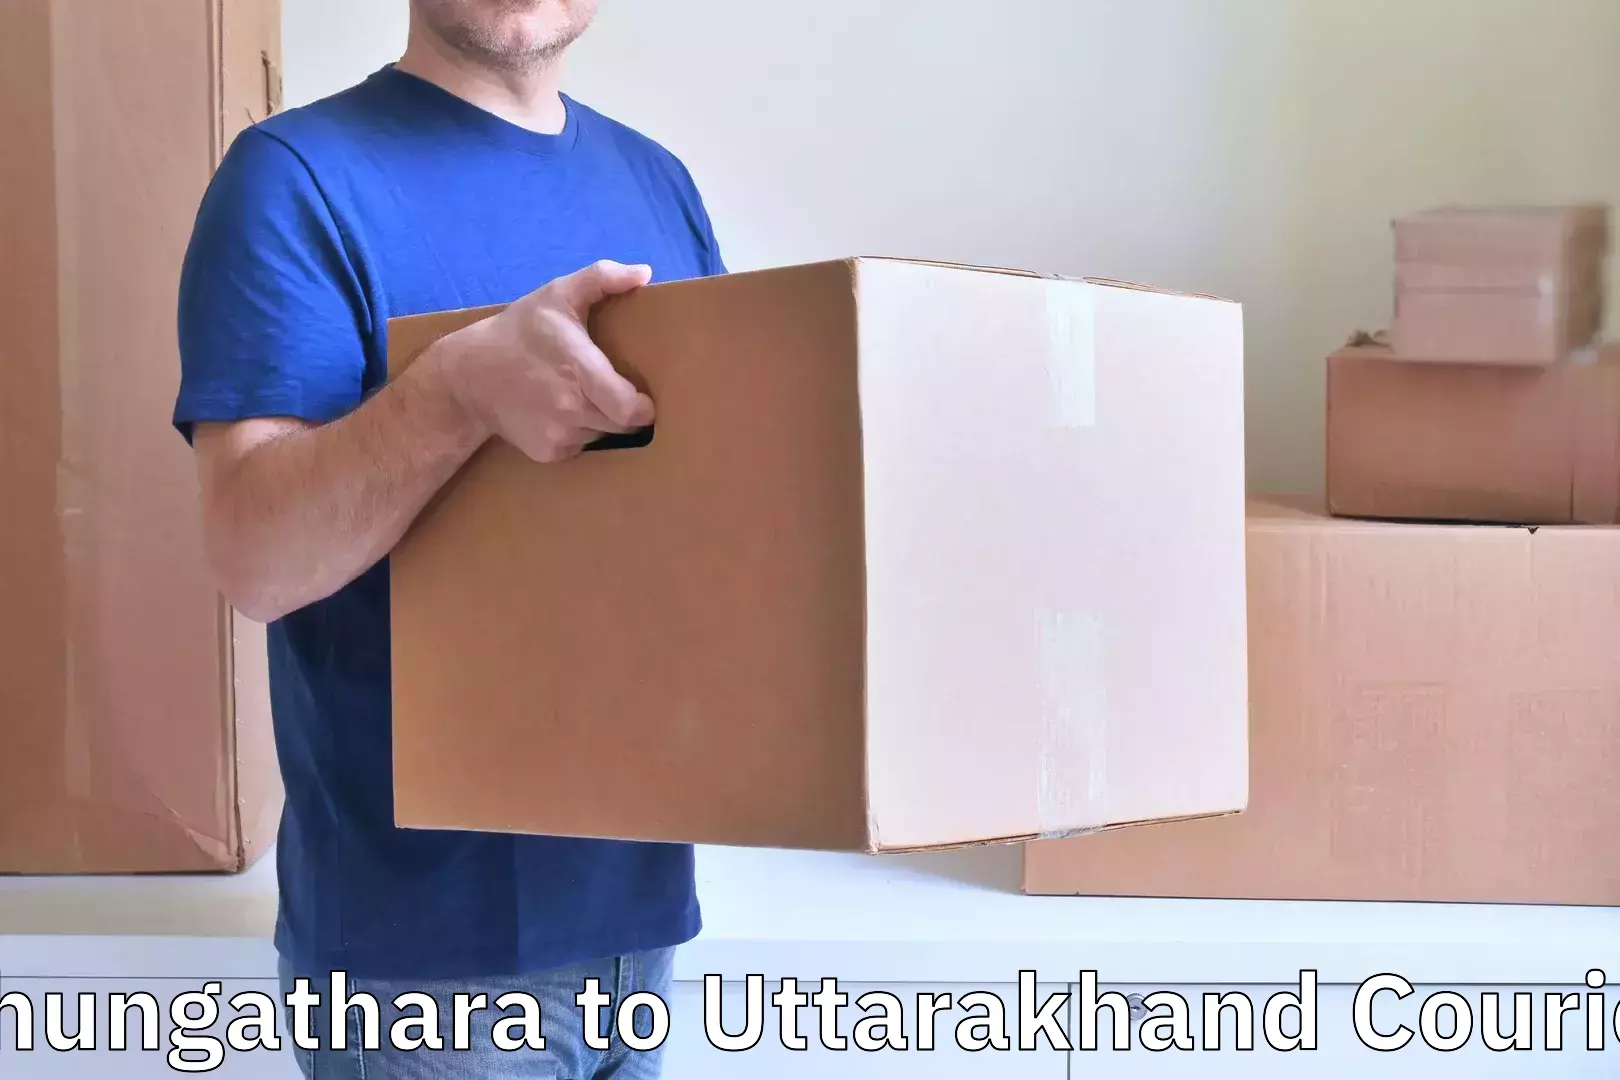 Personal effects shipping Chungathara to Kotdwara